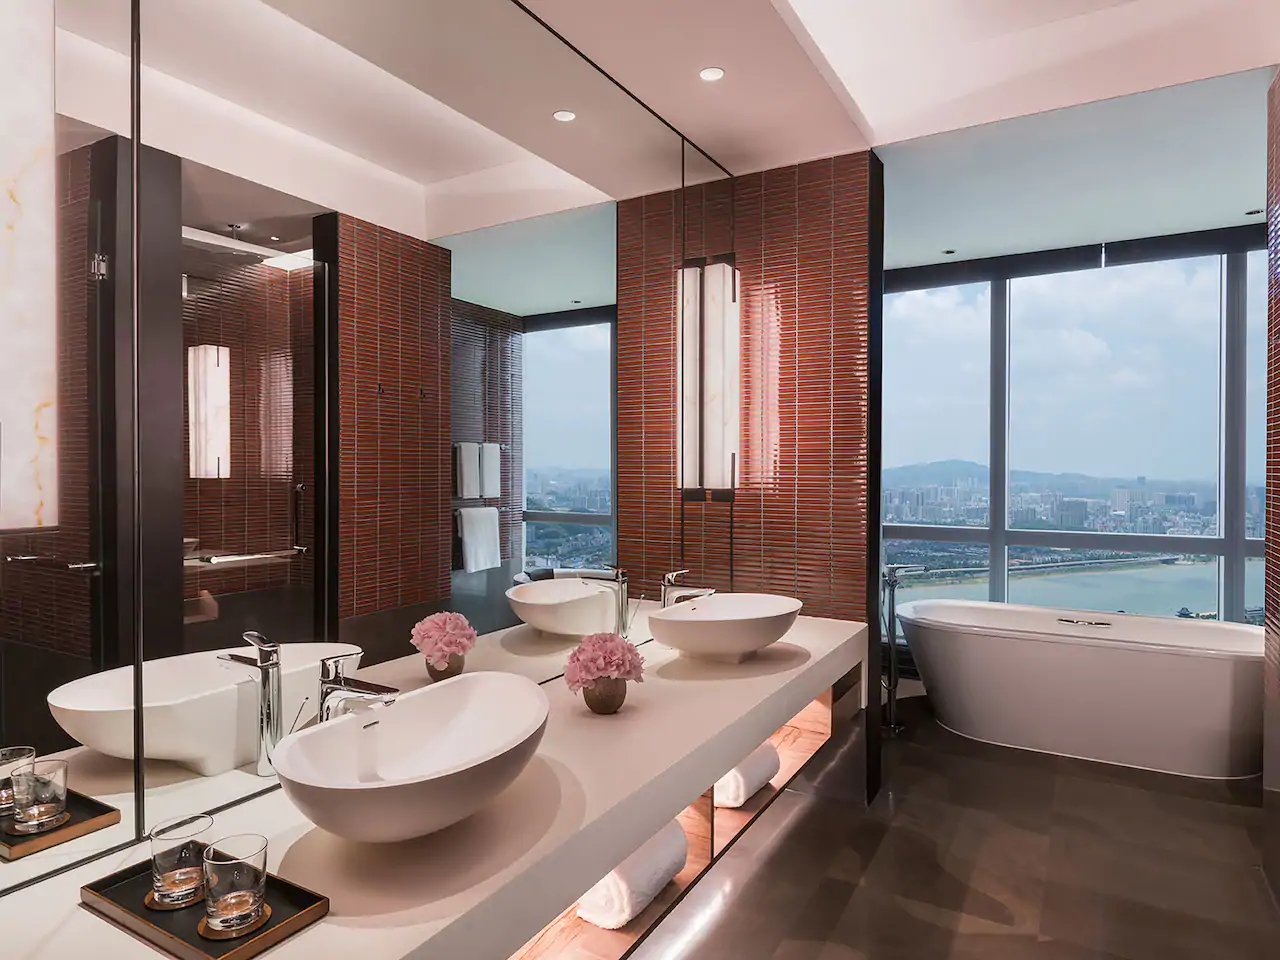 Grand-Hyatt-Changsha-P006-Grand-Suite-Bathroom.4x3.webp.jpg